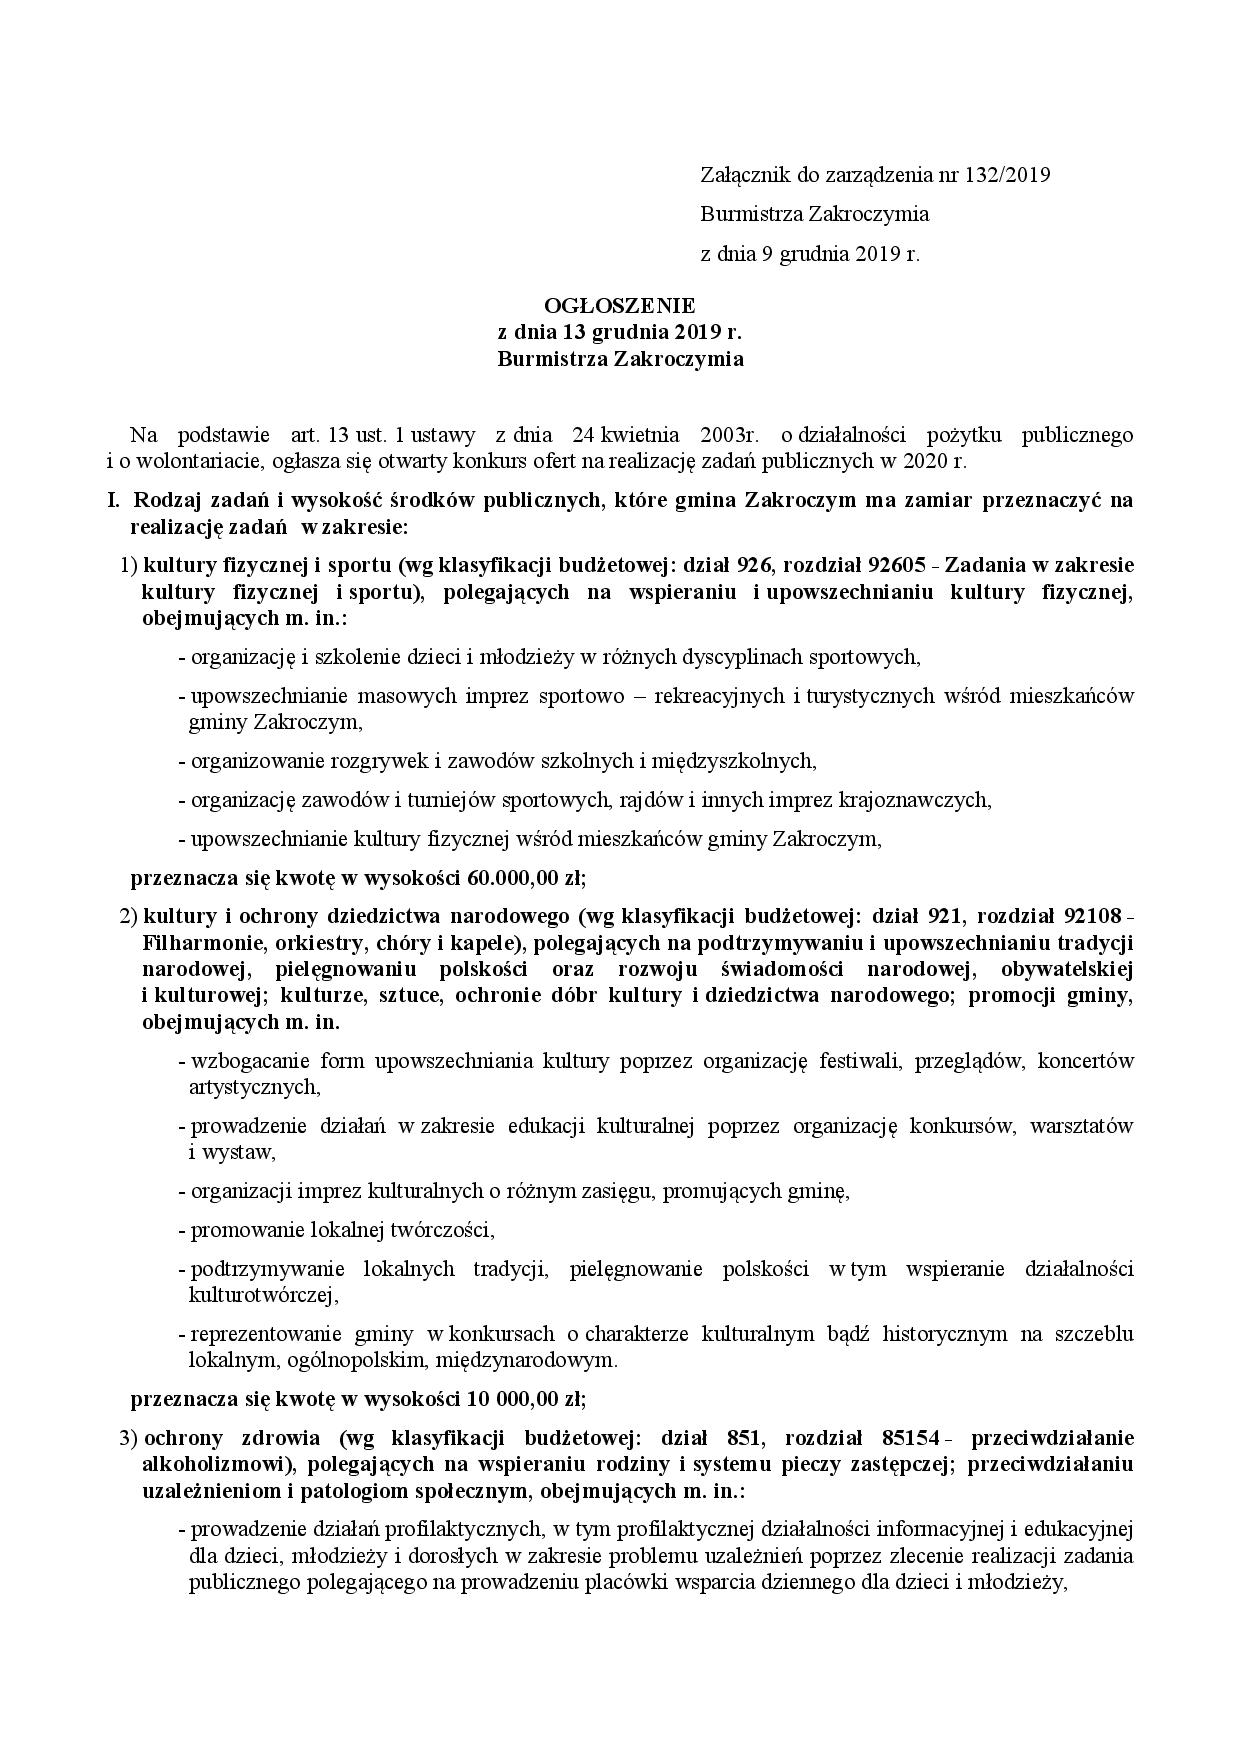 Zarz_konkurs NGOs 2020_prawnik parafka_podpis-page-002